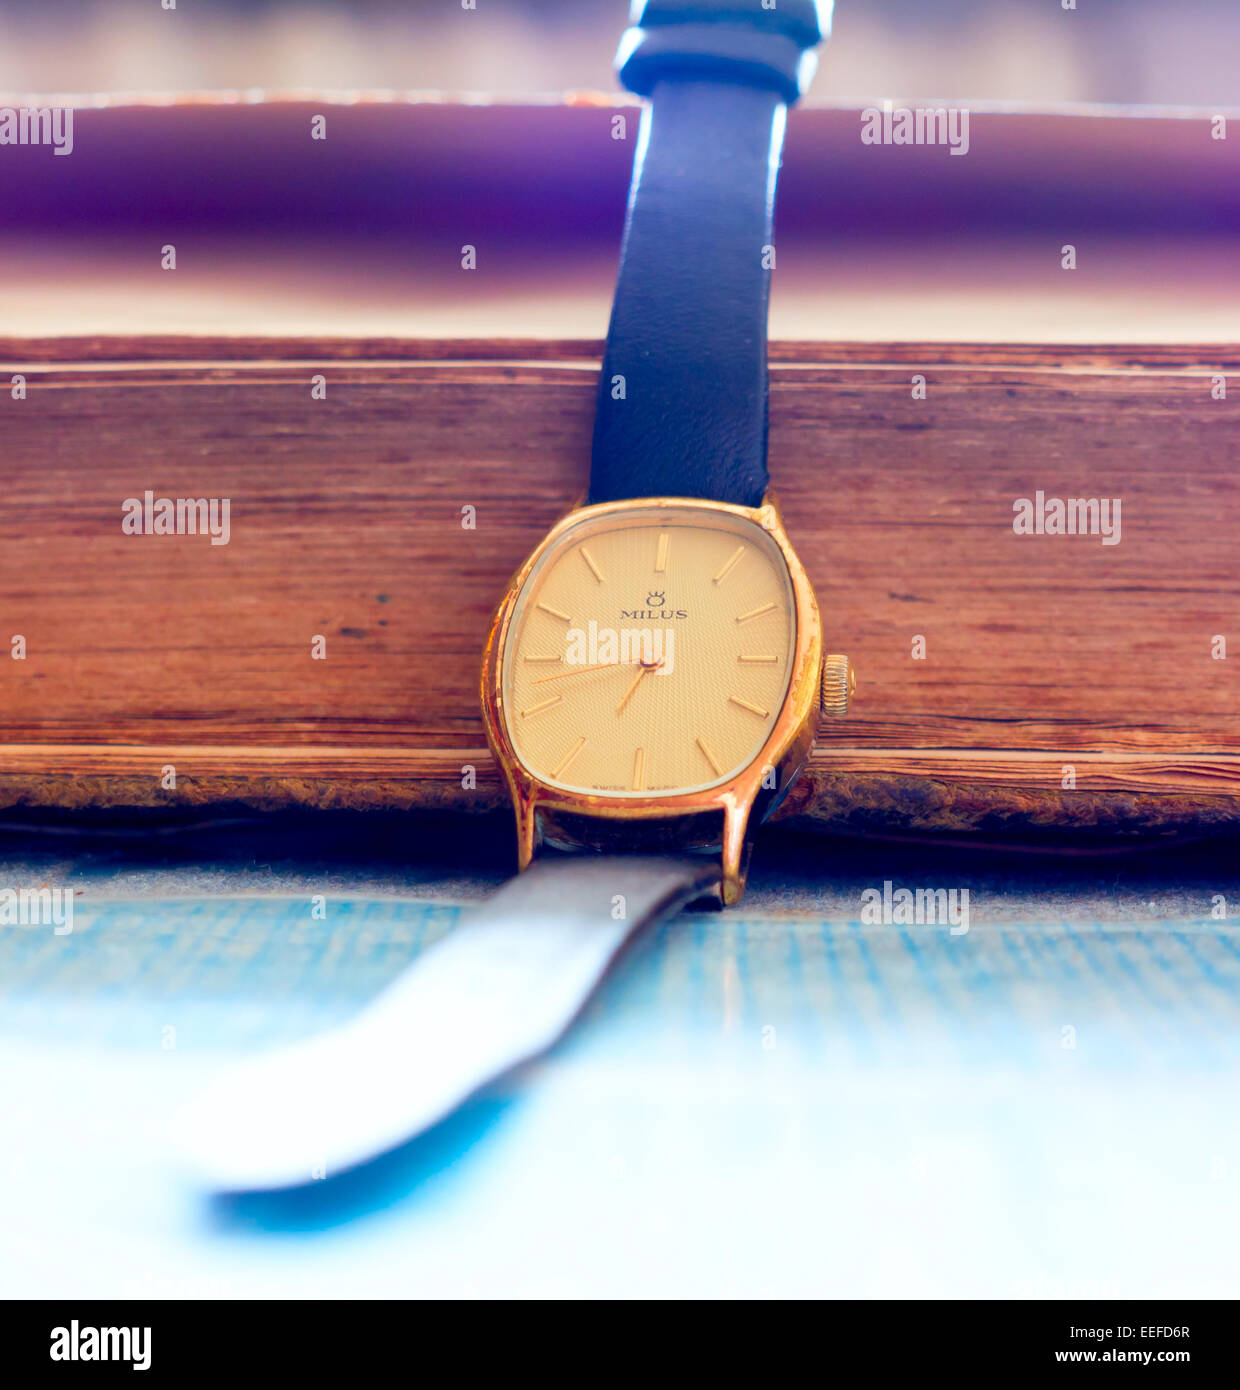 GOMEL, Bélarus - 27 décembre 2014 MILUS : SWISS MADE Modèle M8.1040 montre-bracelet.  Milus est une marque horlogère suisse Photo Stock - Alamy